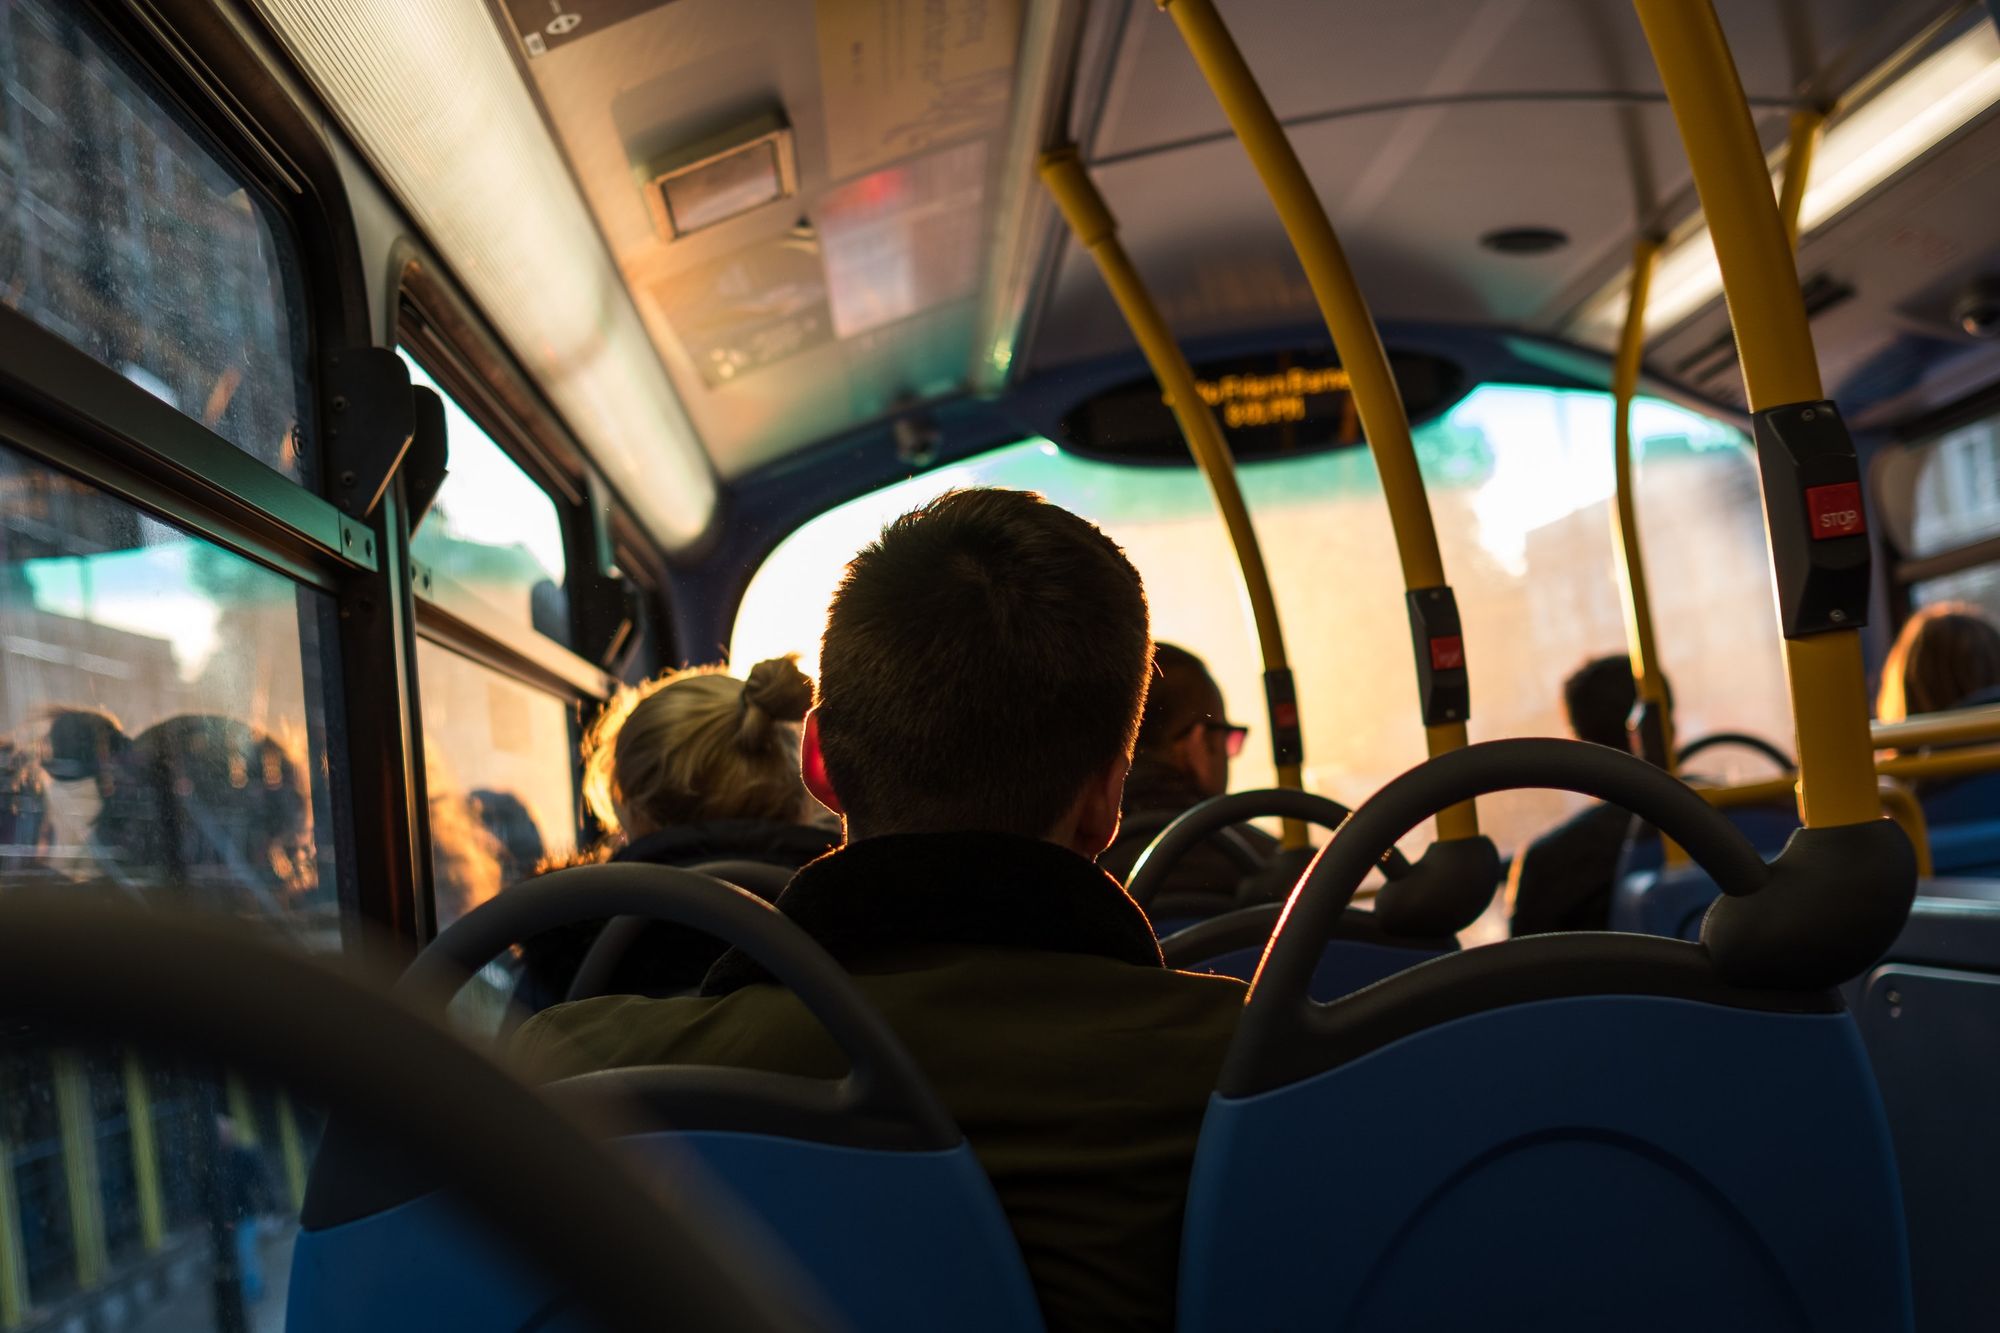 Imagen de unas personas sentadas en un autobús tomada desde atras. Photo by Mediocre Studio on Unsplash